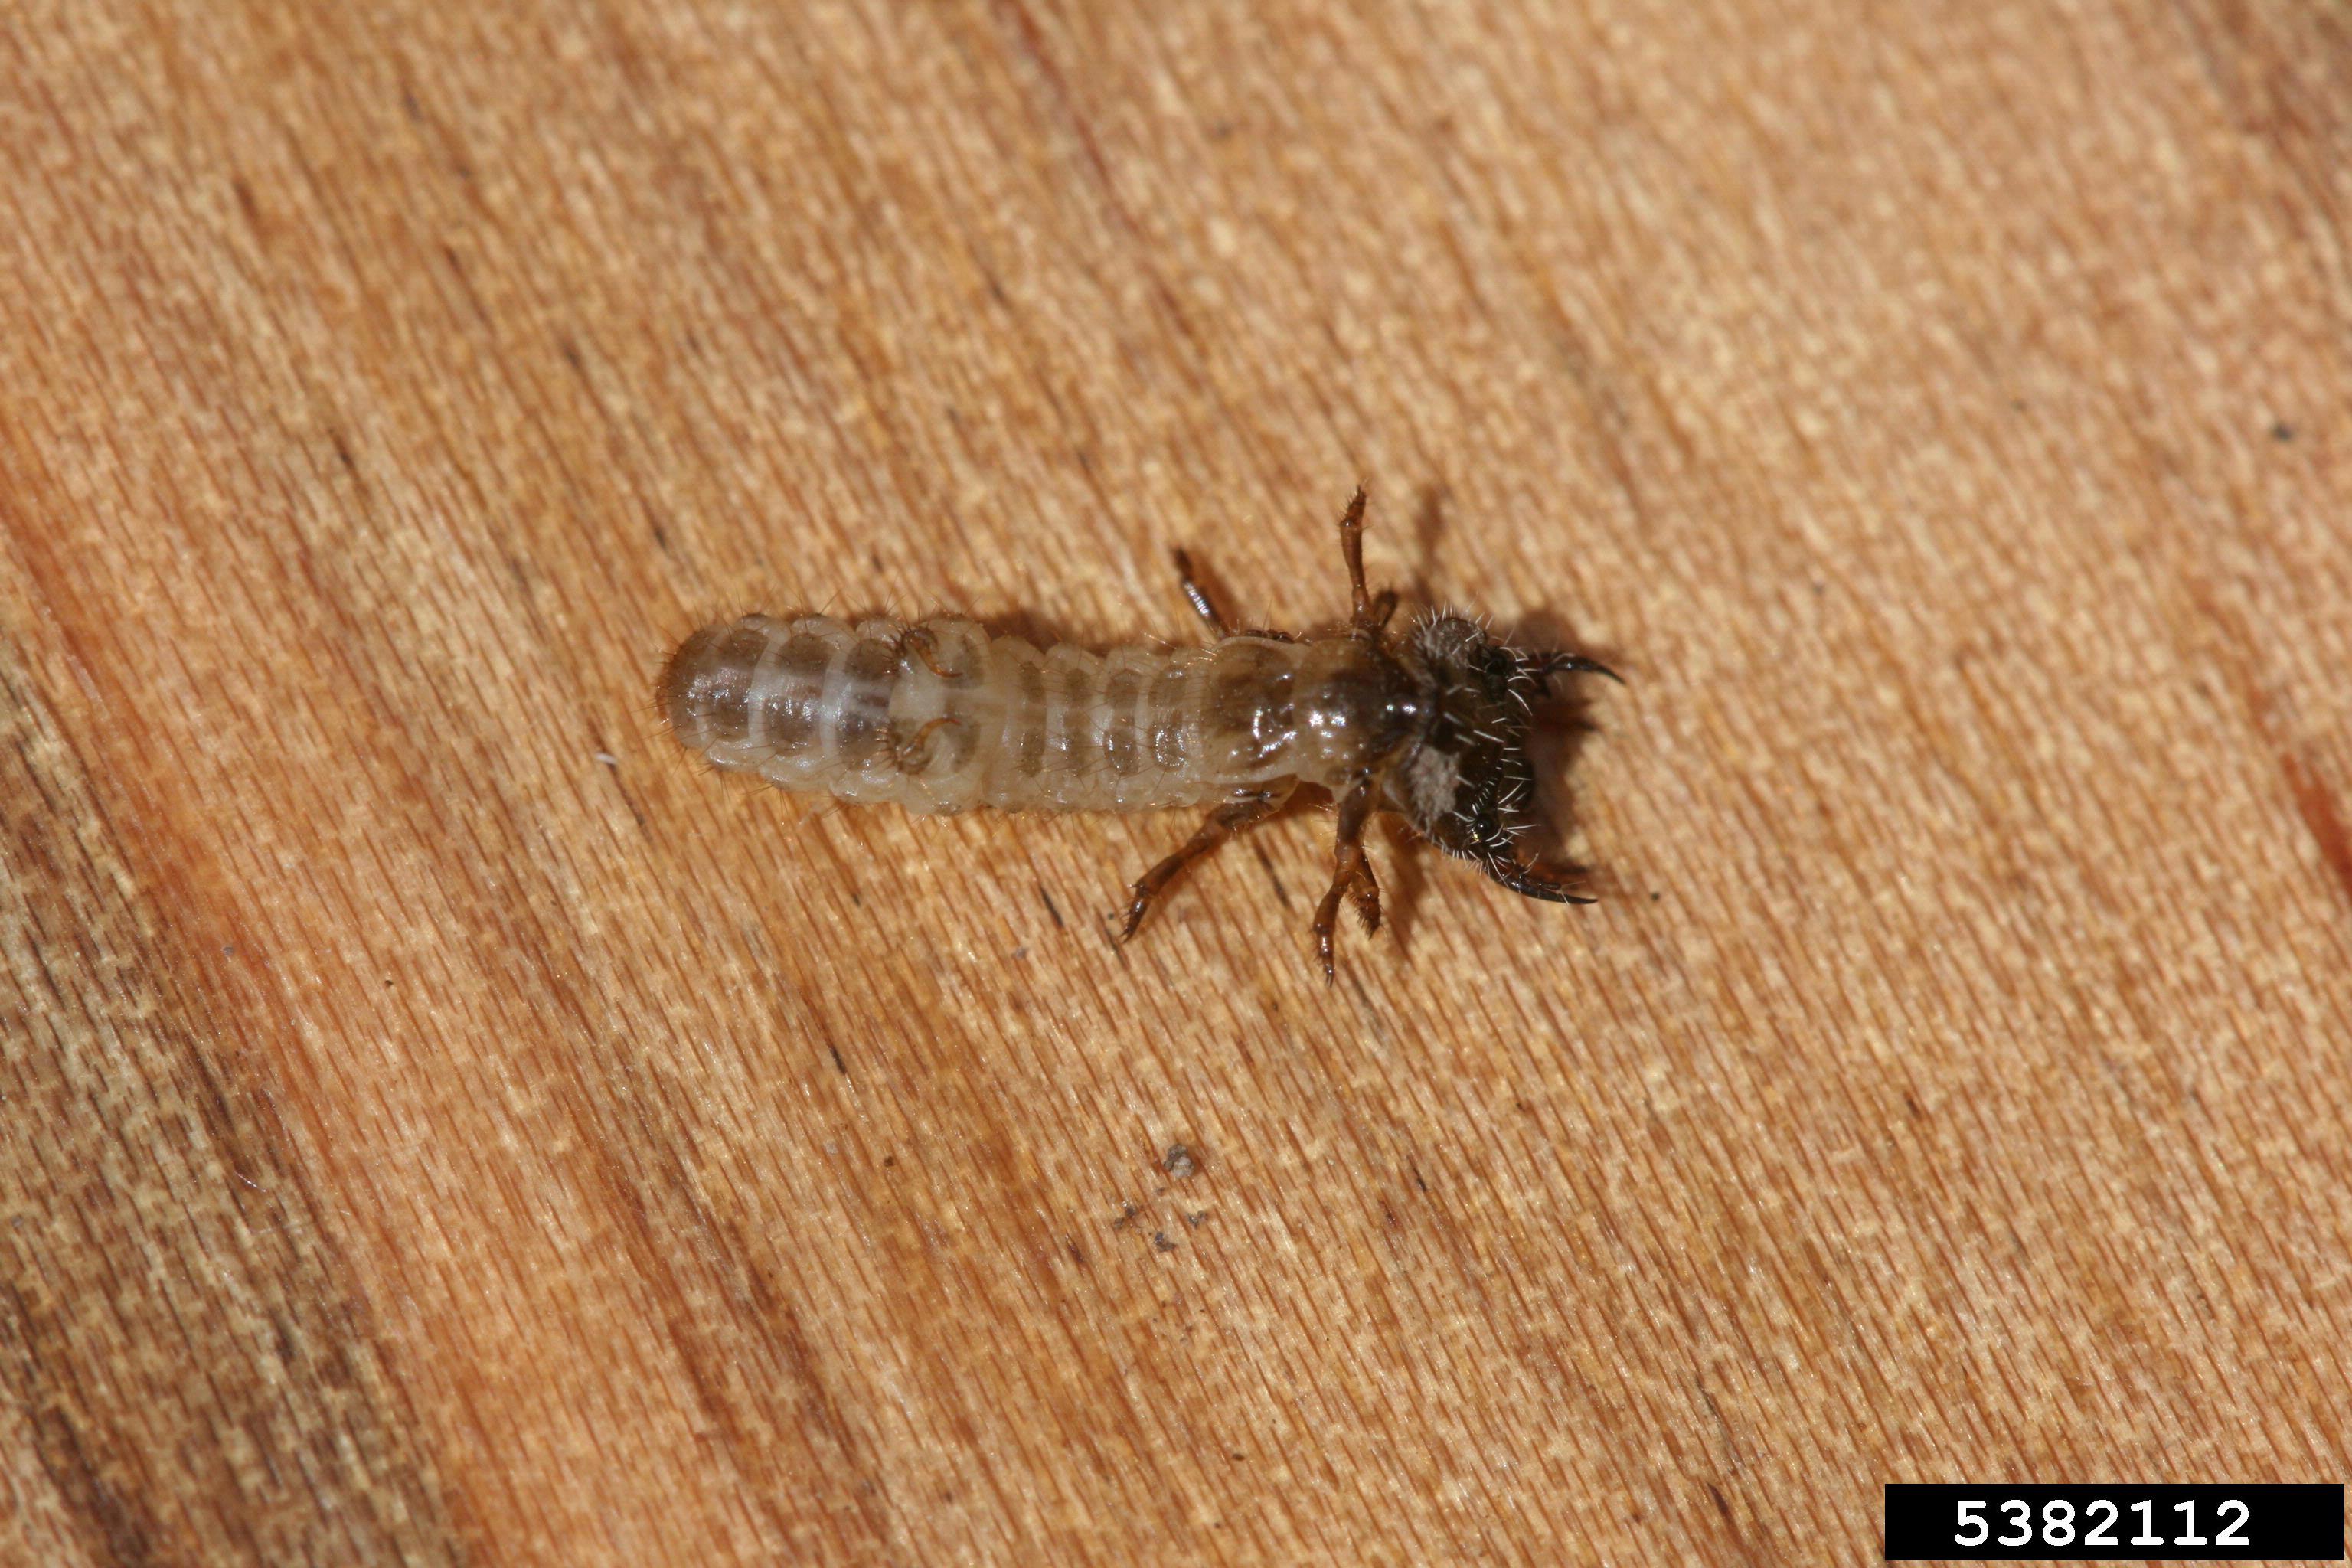 Tiger beetle larva.